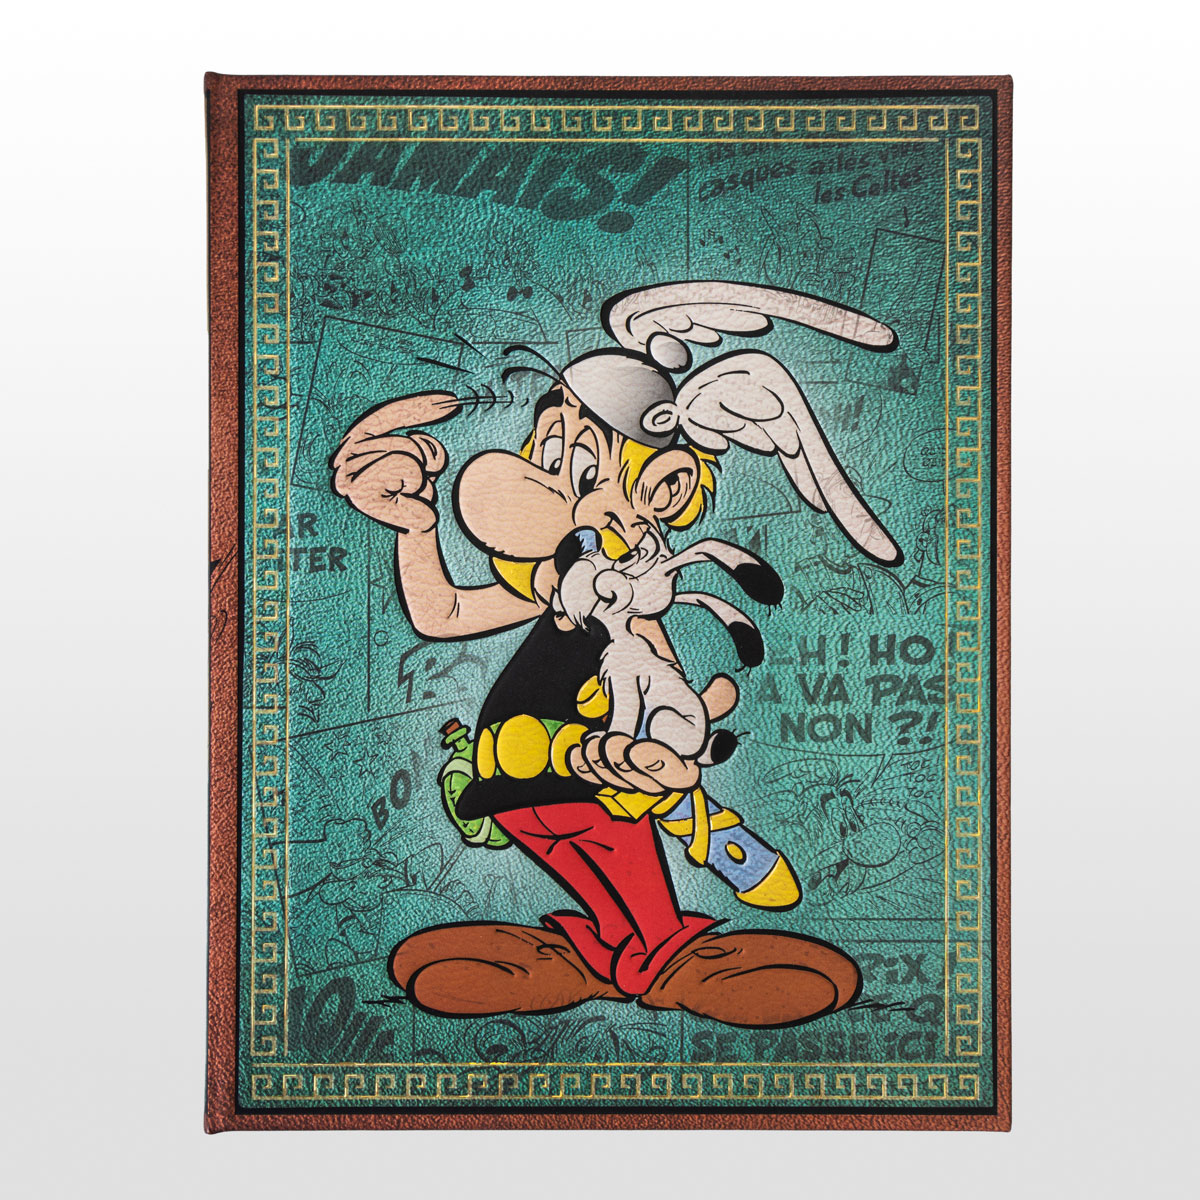 Notebook Uderzo: Asterix the Gaul